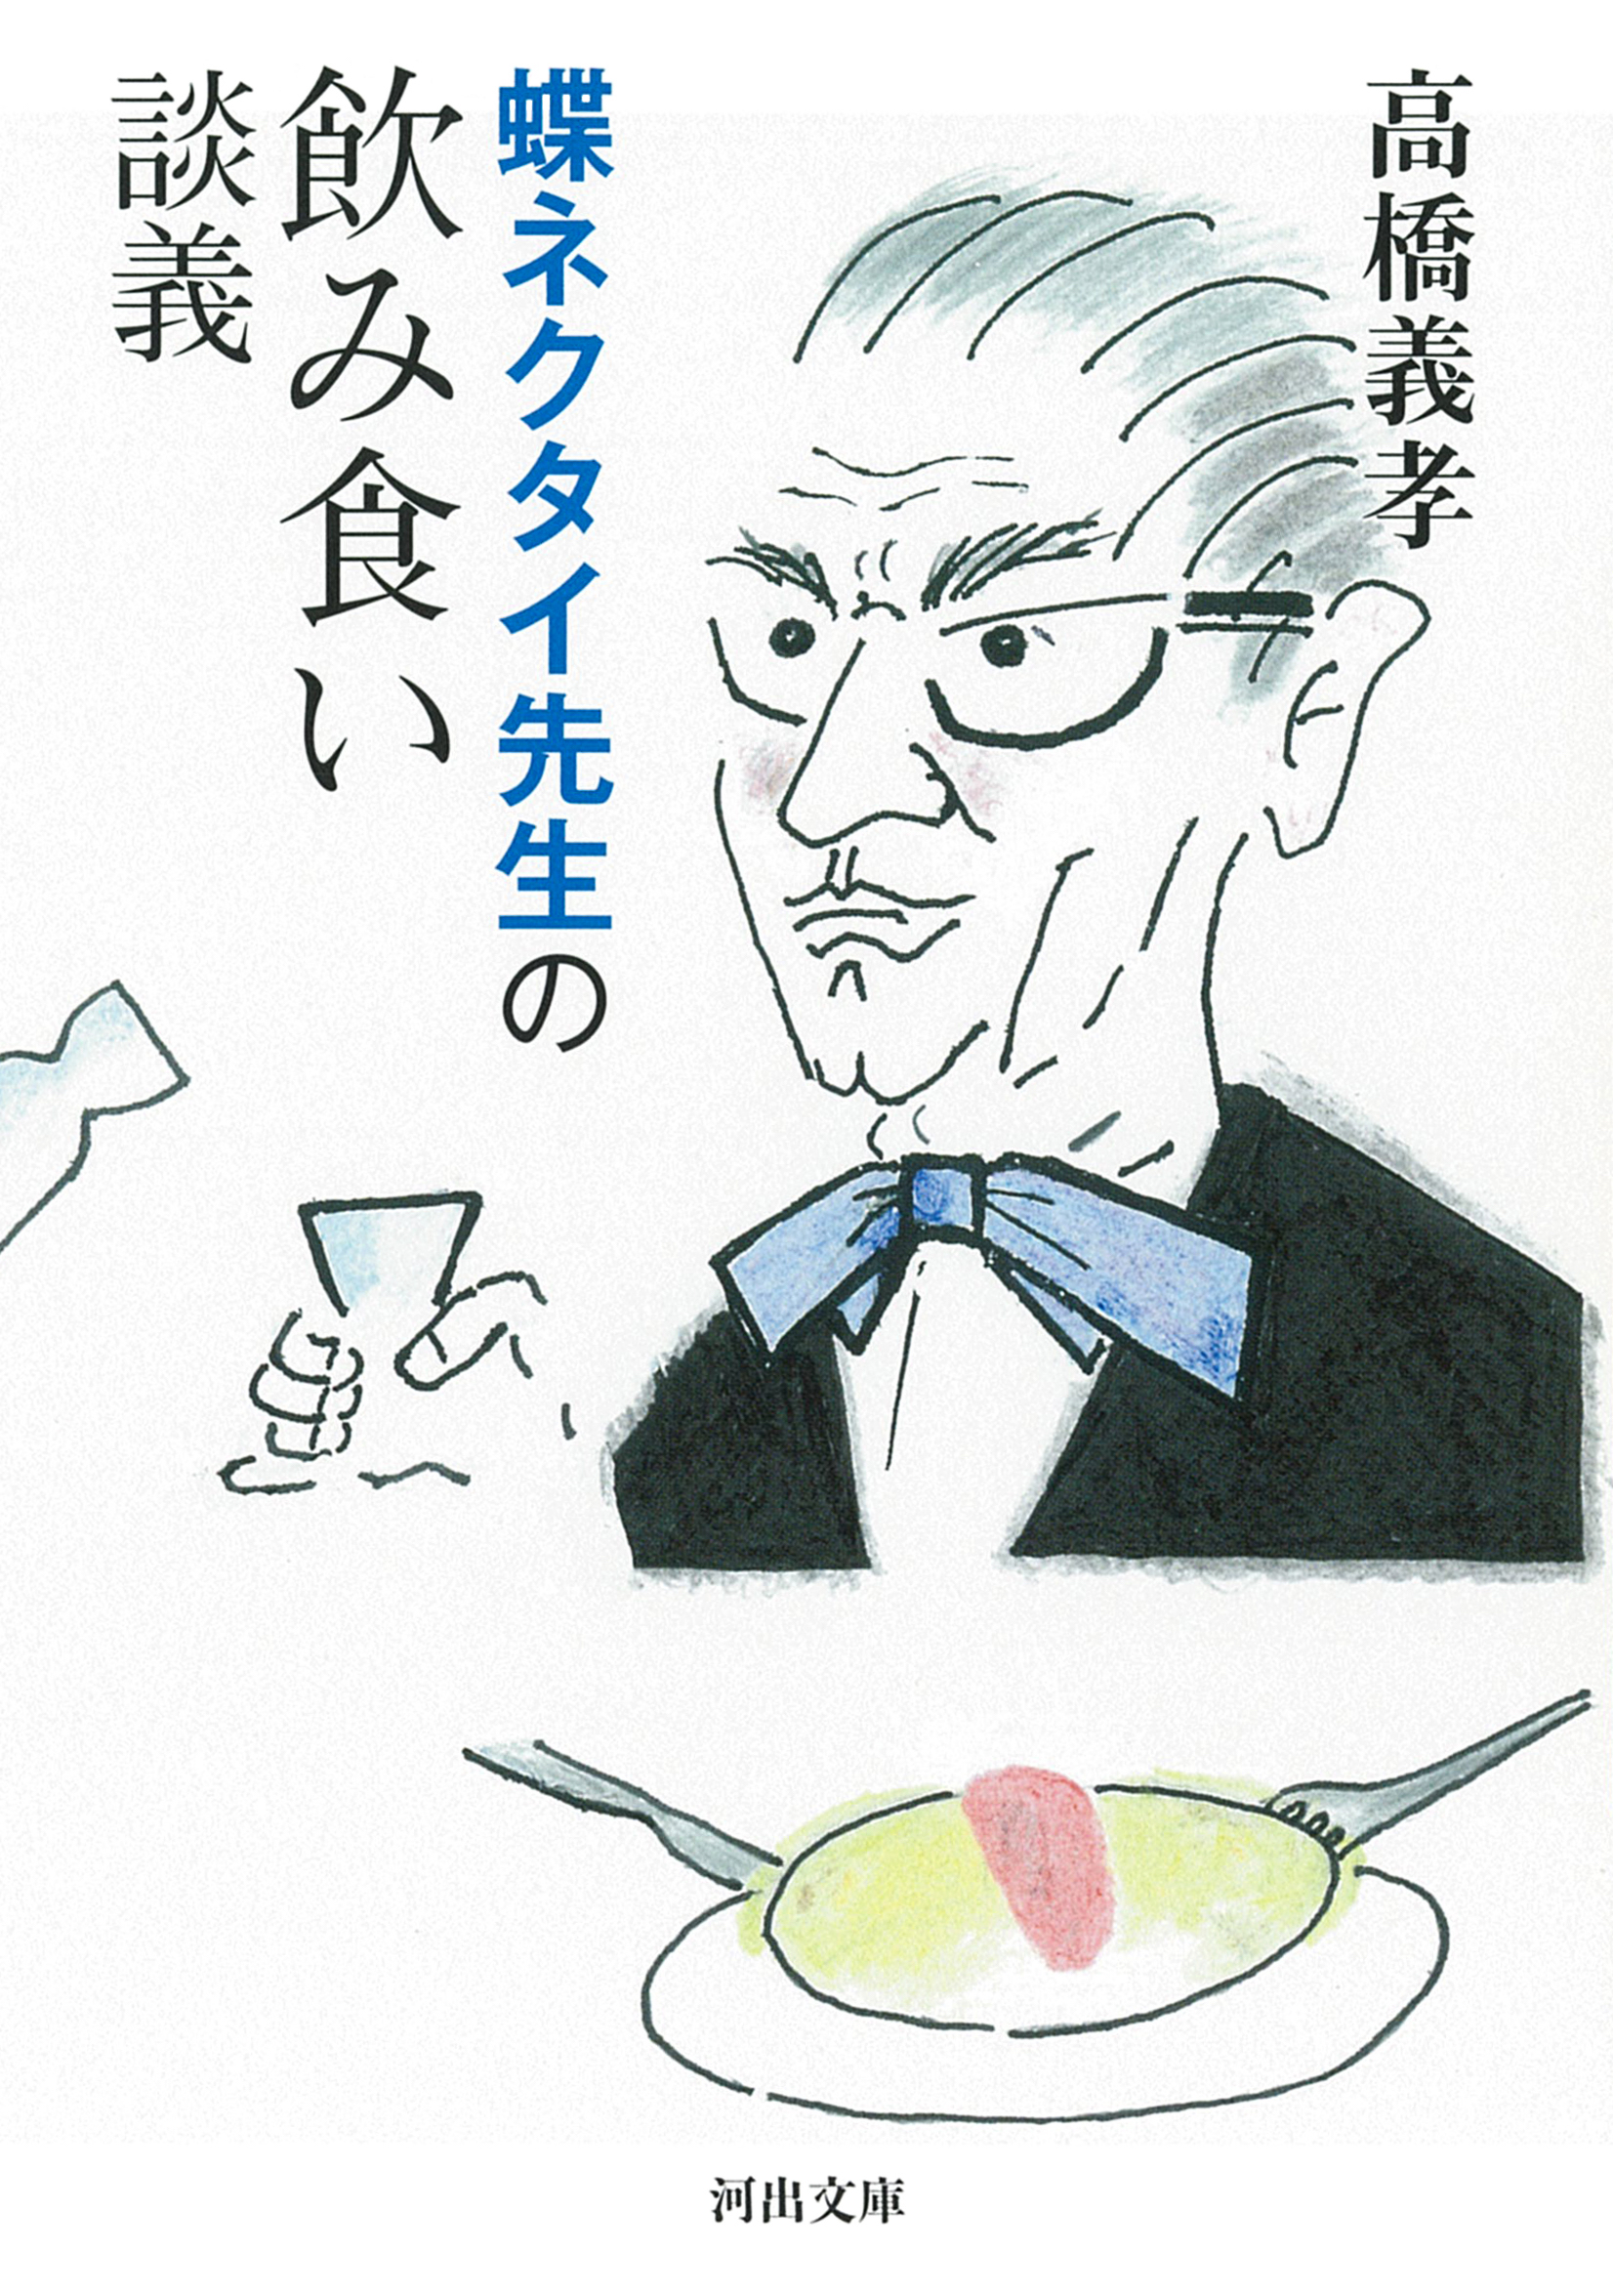 蝶ネクタイ先生の飲み食い談義の商品画像